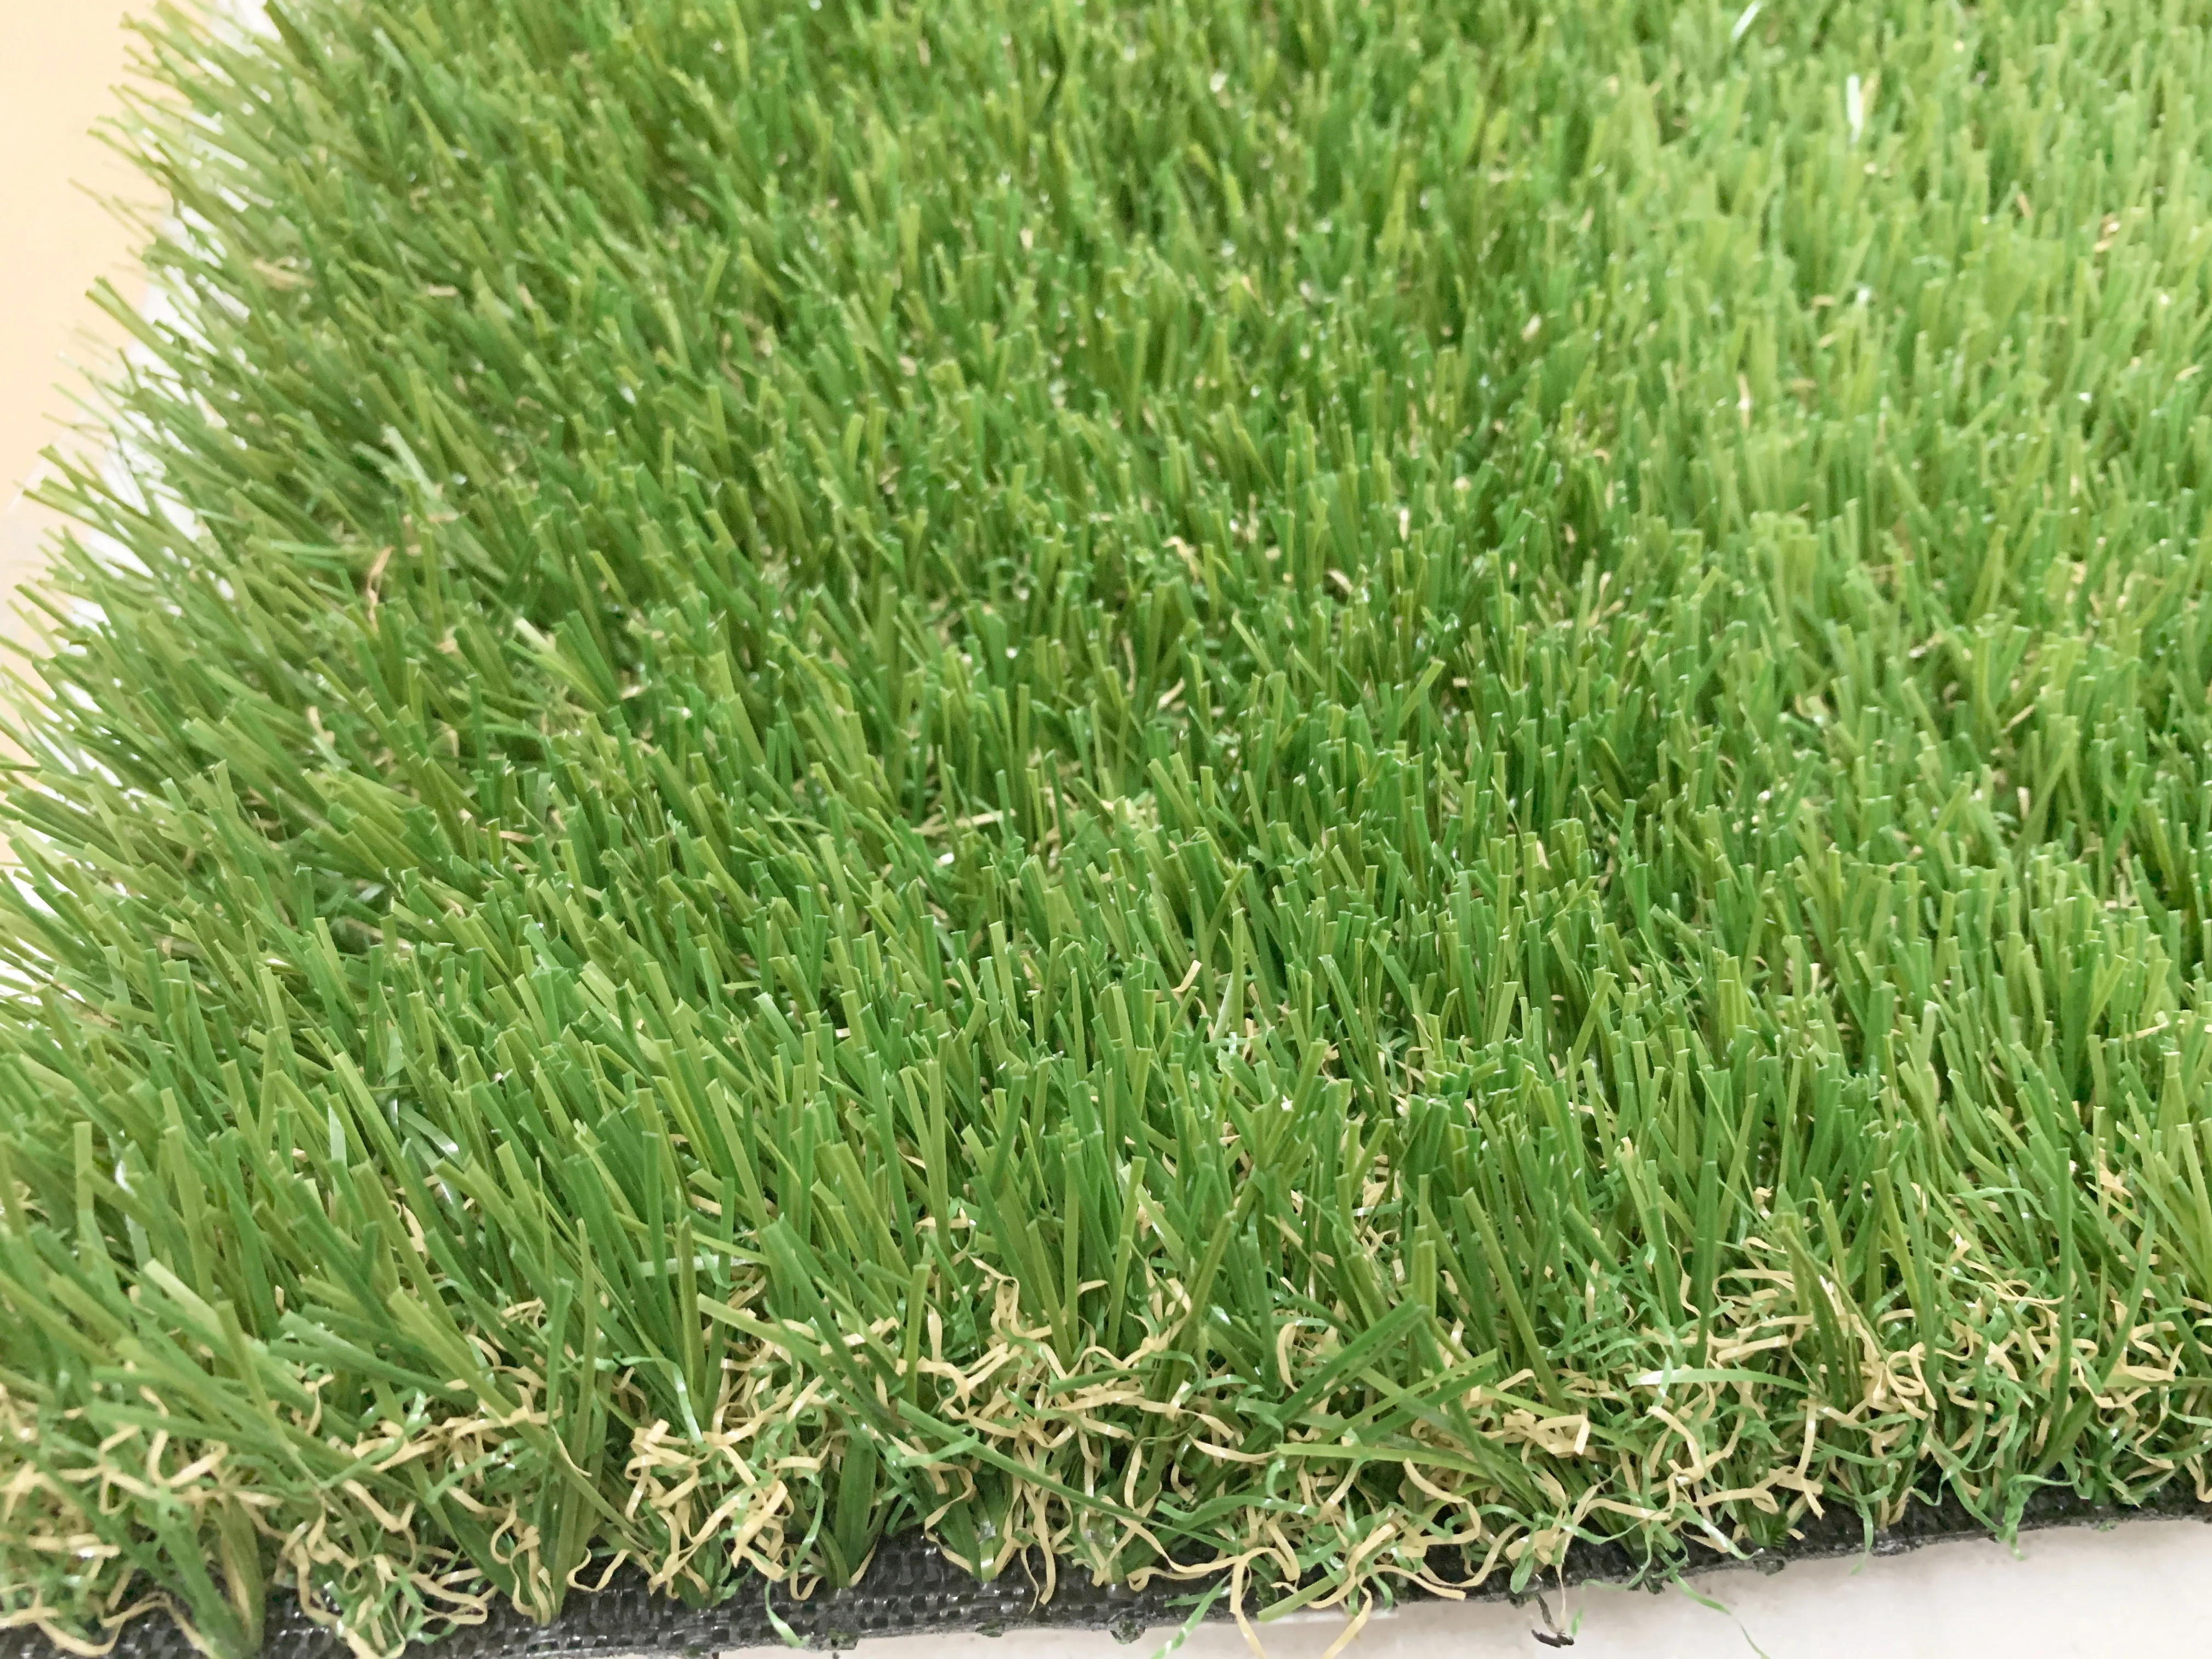 40mm Turf artificial lawn artificial grass turf landscape garden